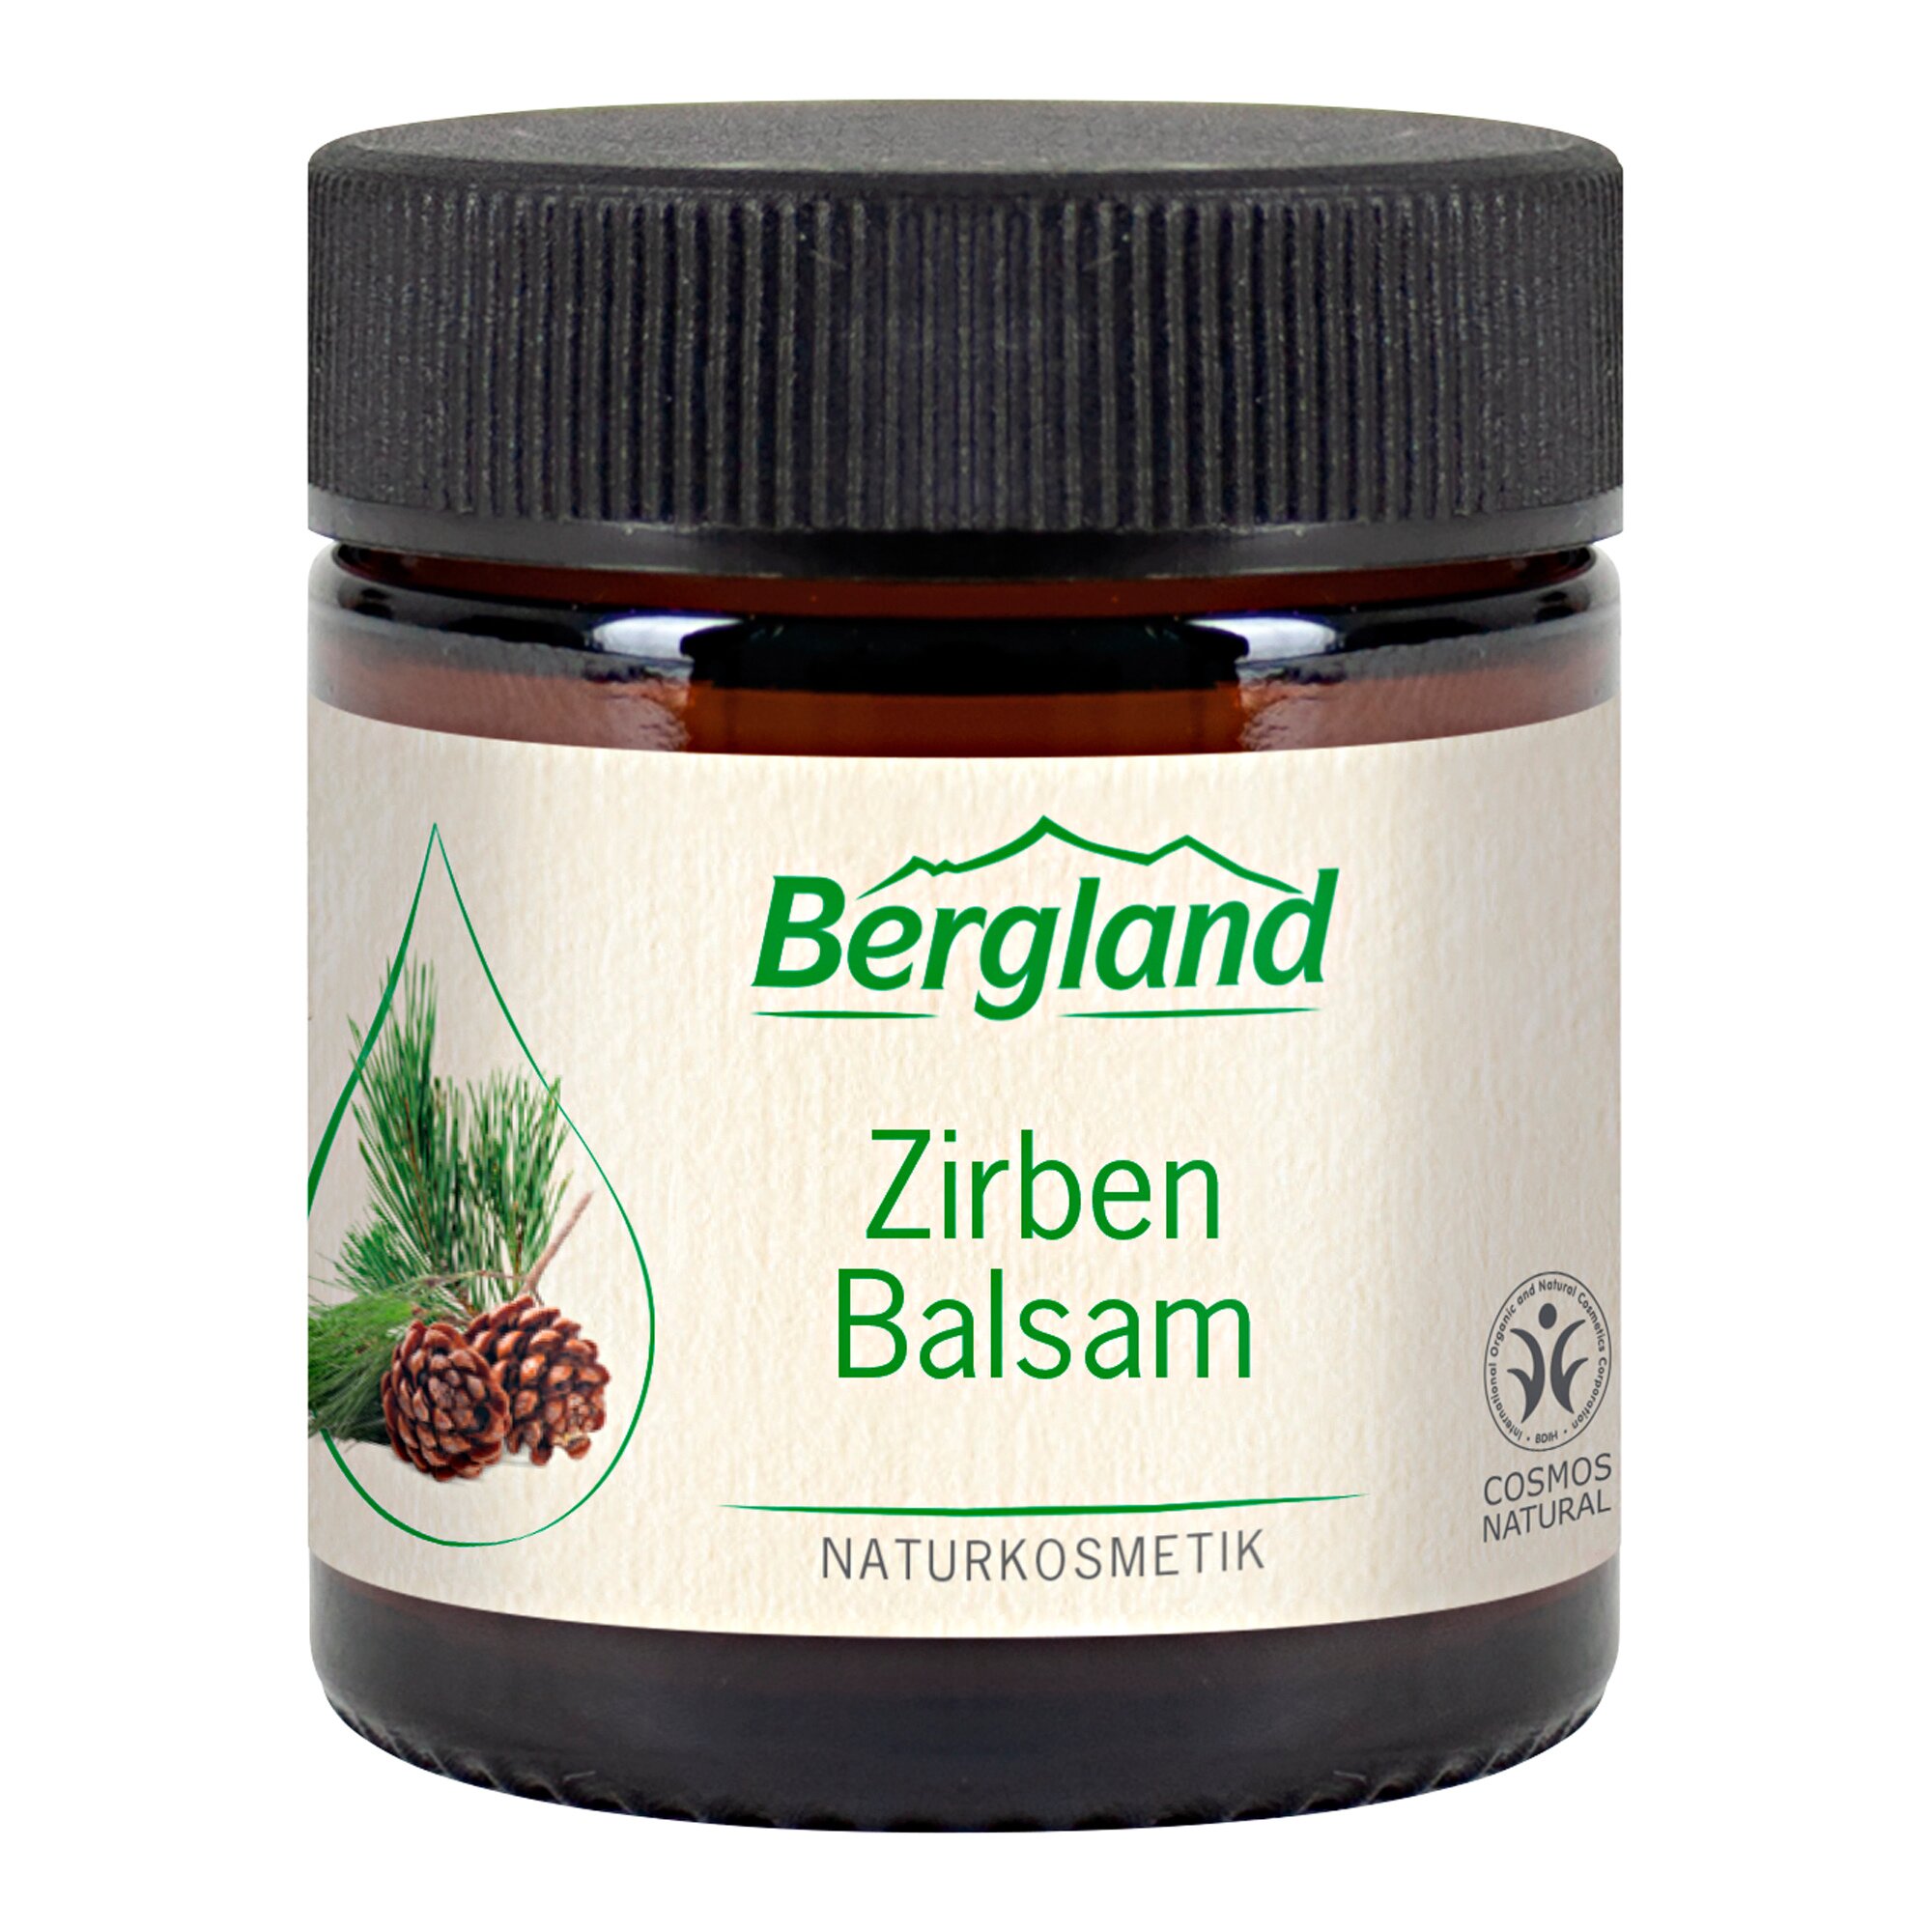 Image of Bergland Zirben Balsam, 30 ml